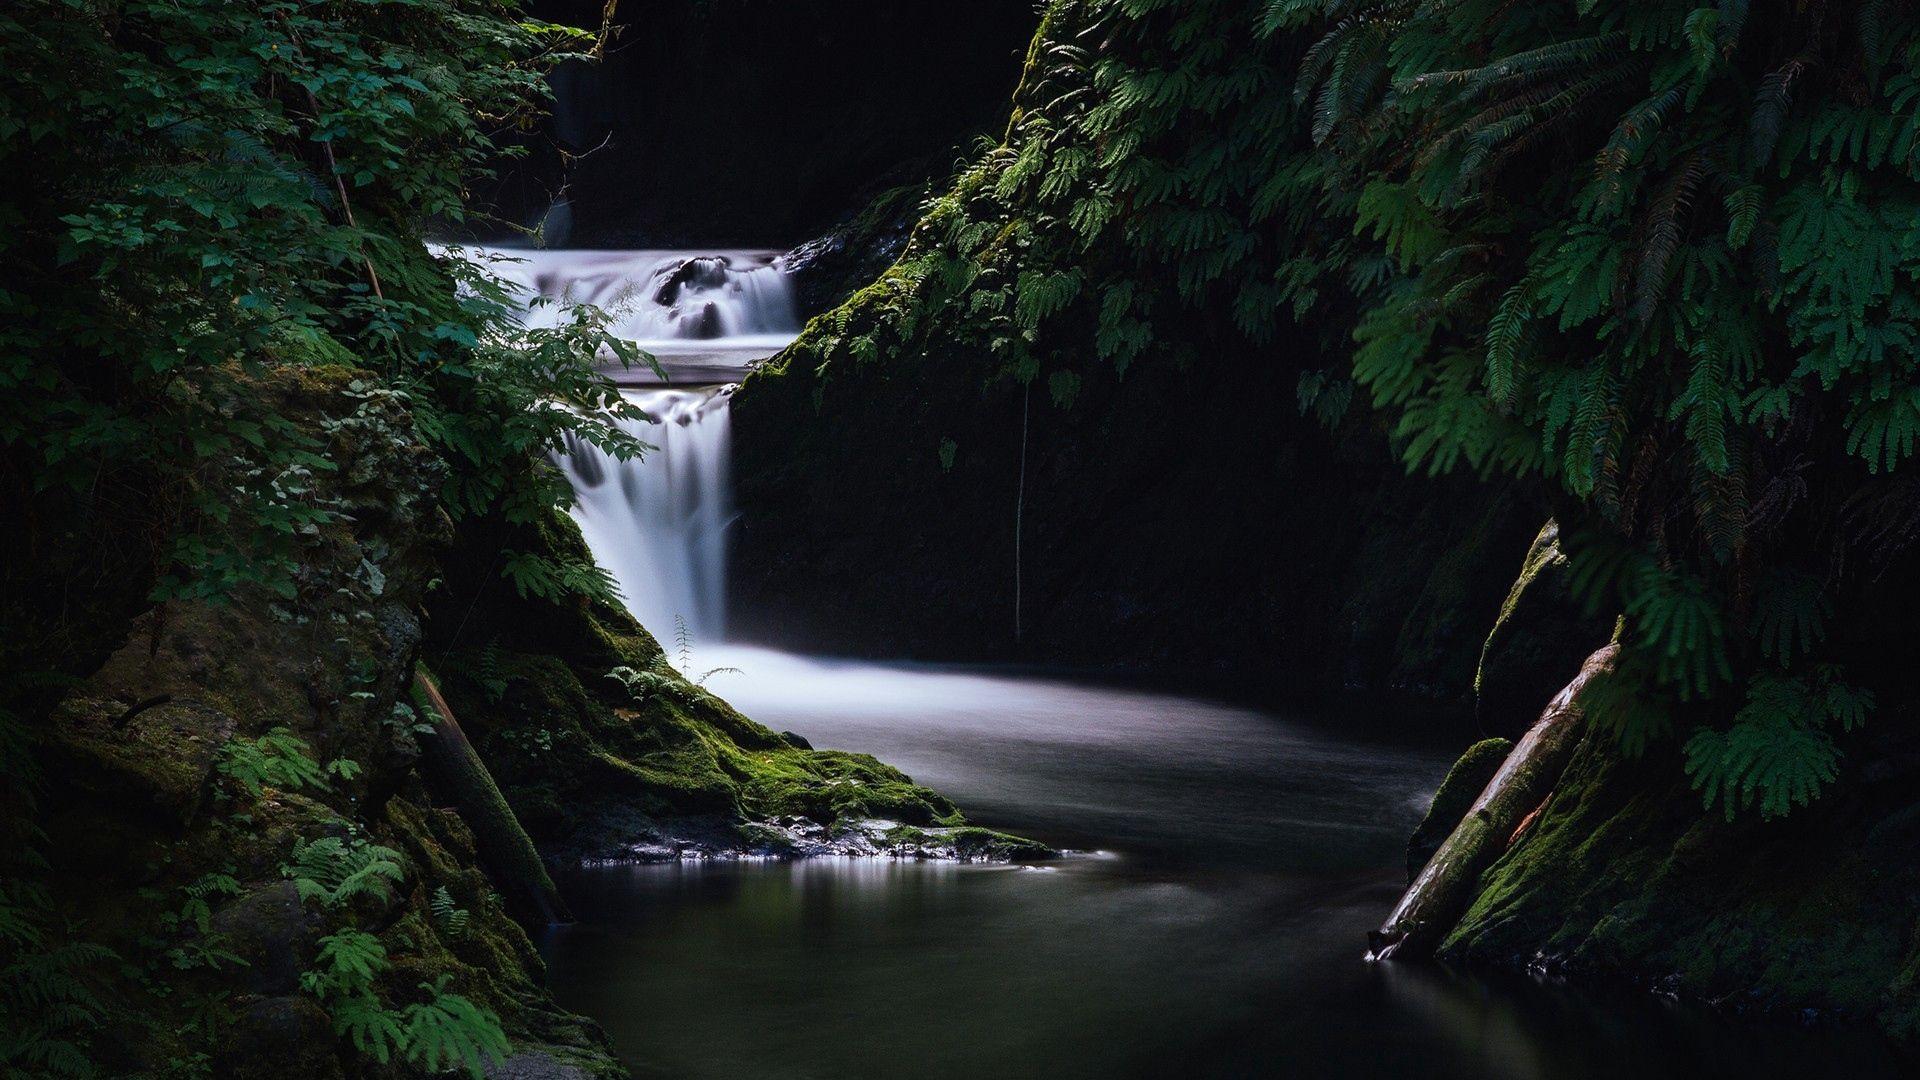 Download wallpaper 1920x1080 waterfall, grass, dark, nature full HD